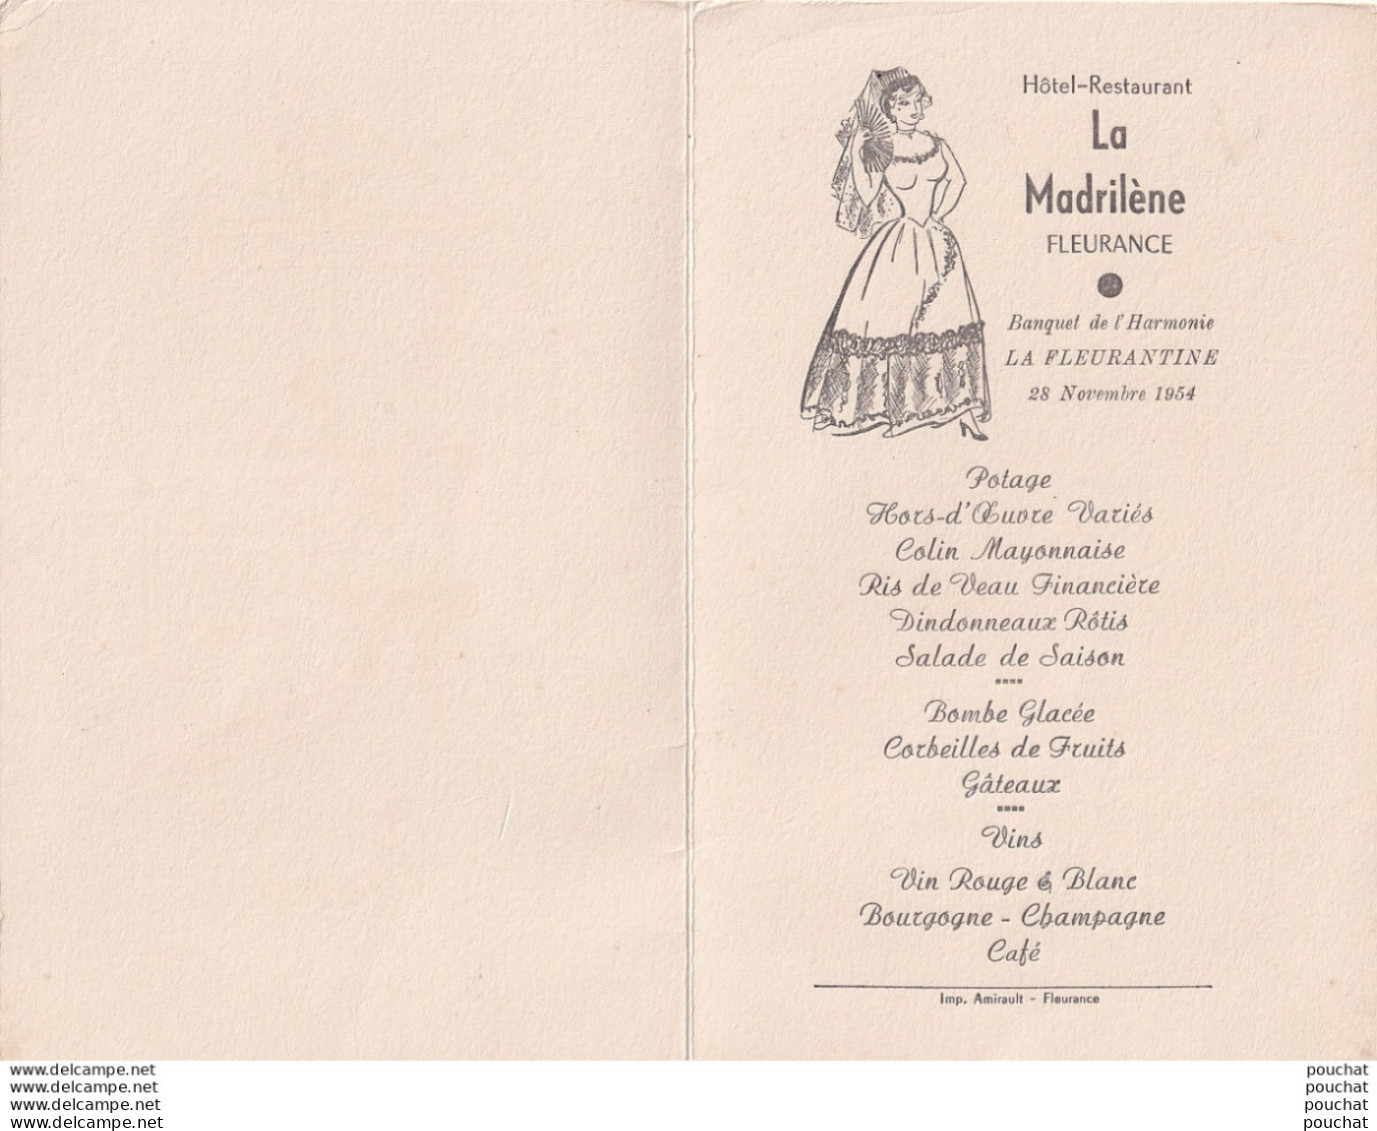 FLEURANCE - HOTEL RESTAURANT LA MADRILENE - BANQUET DE L ' HARMONIE LA FLEURANTINE 28/11/1954 - MENU MR BEGUE - 2 SCANS - Menu